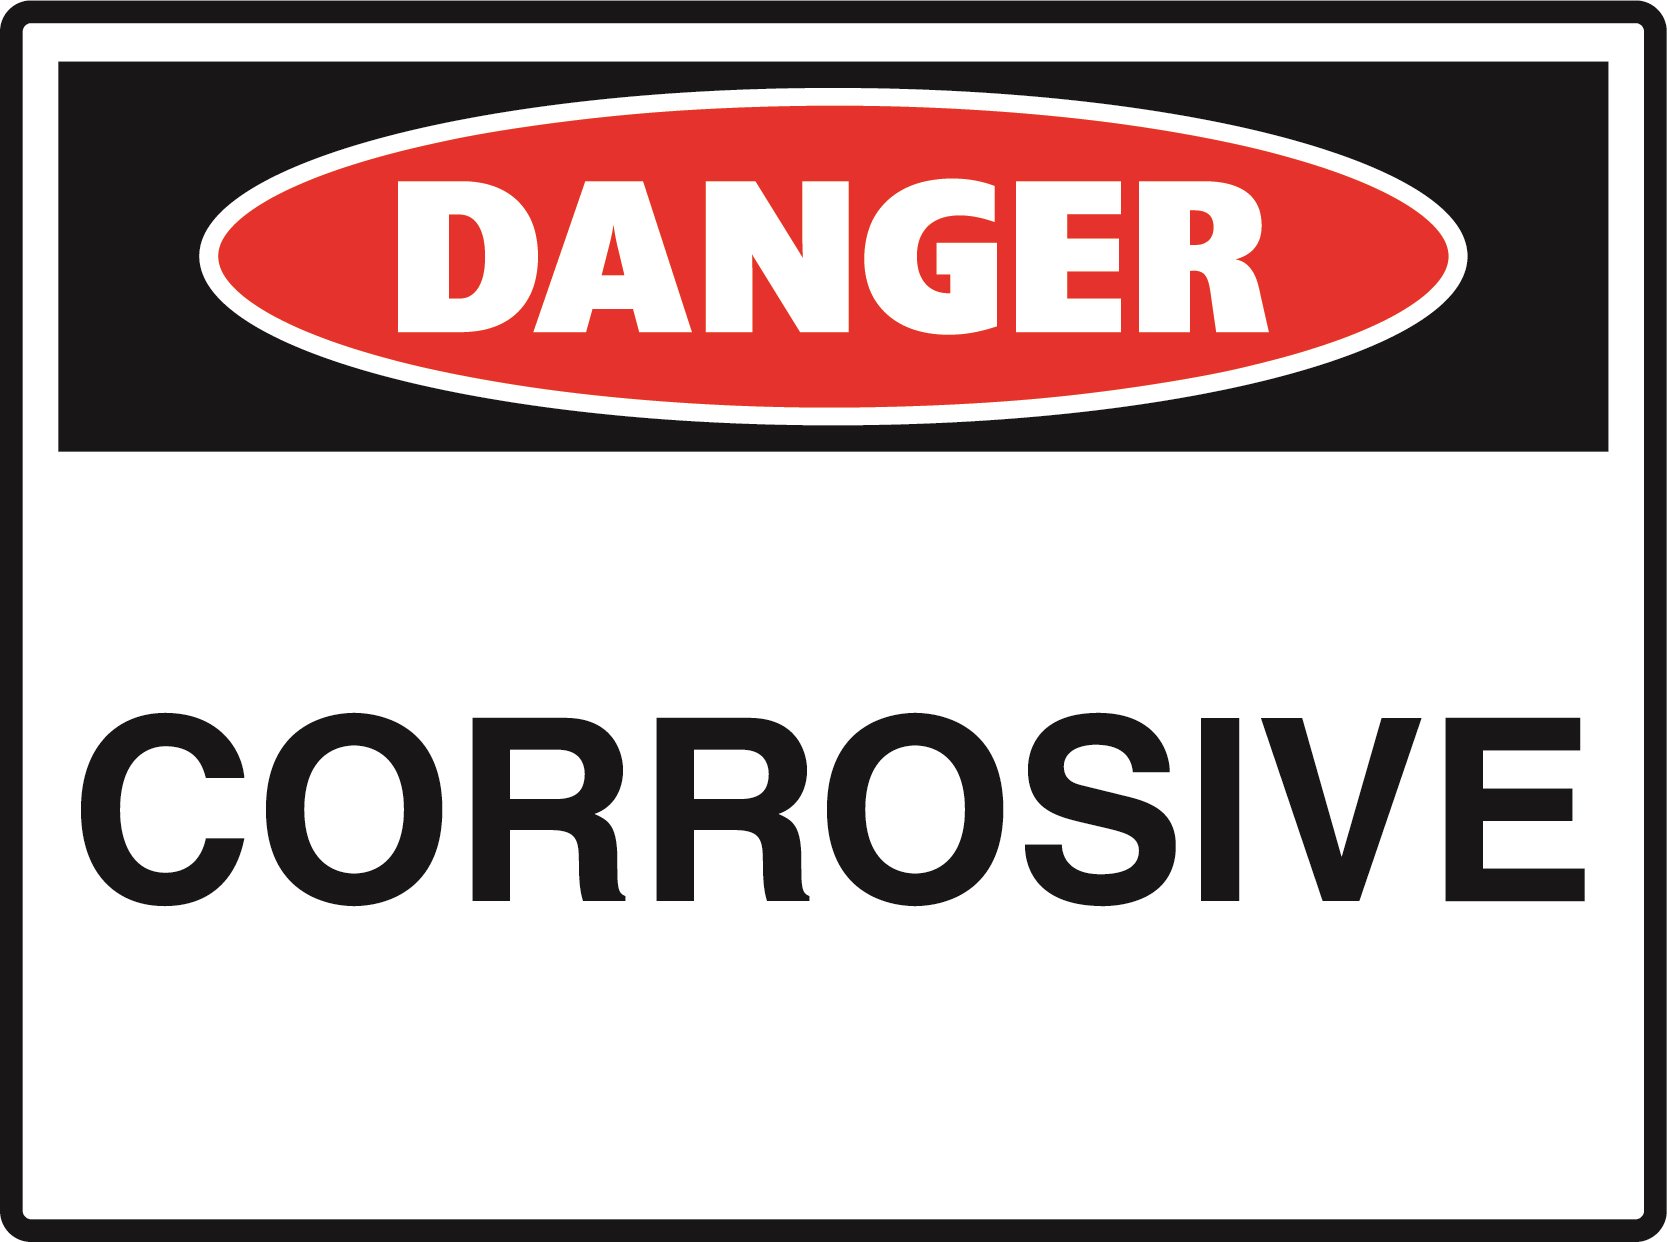 Danger - Corrosive - 600x450